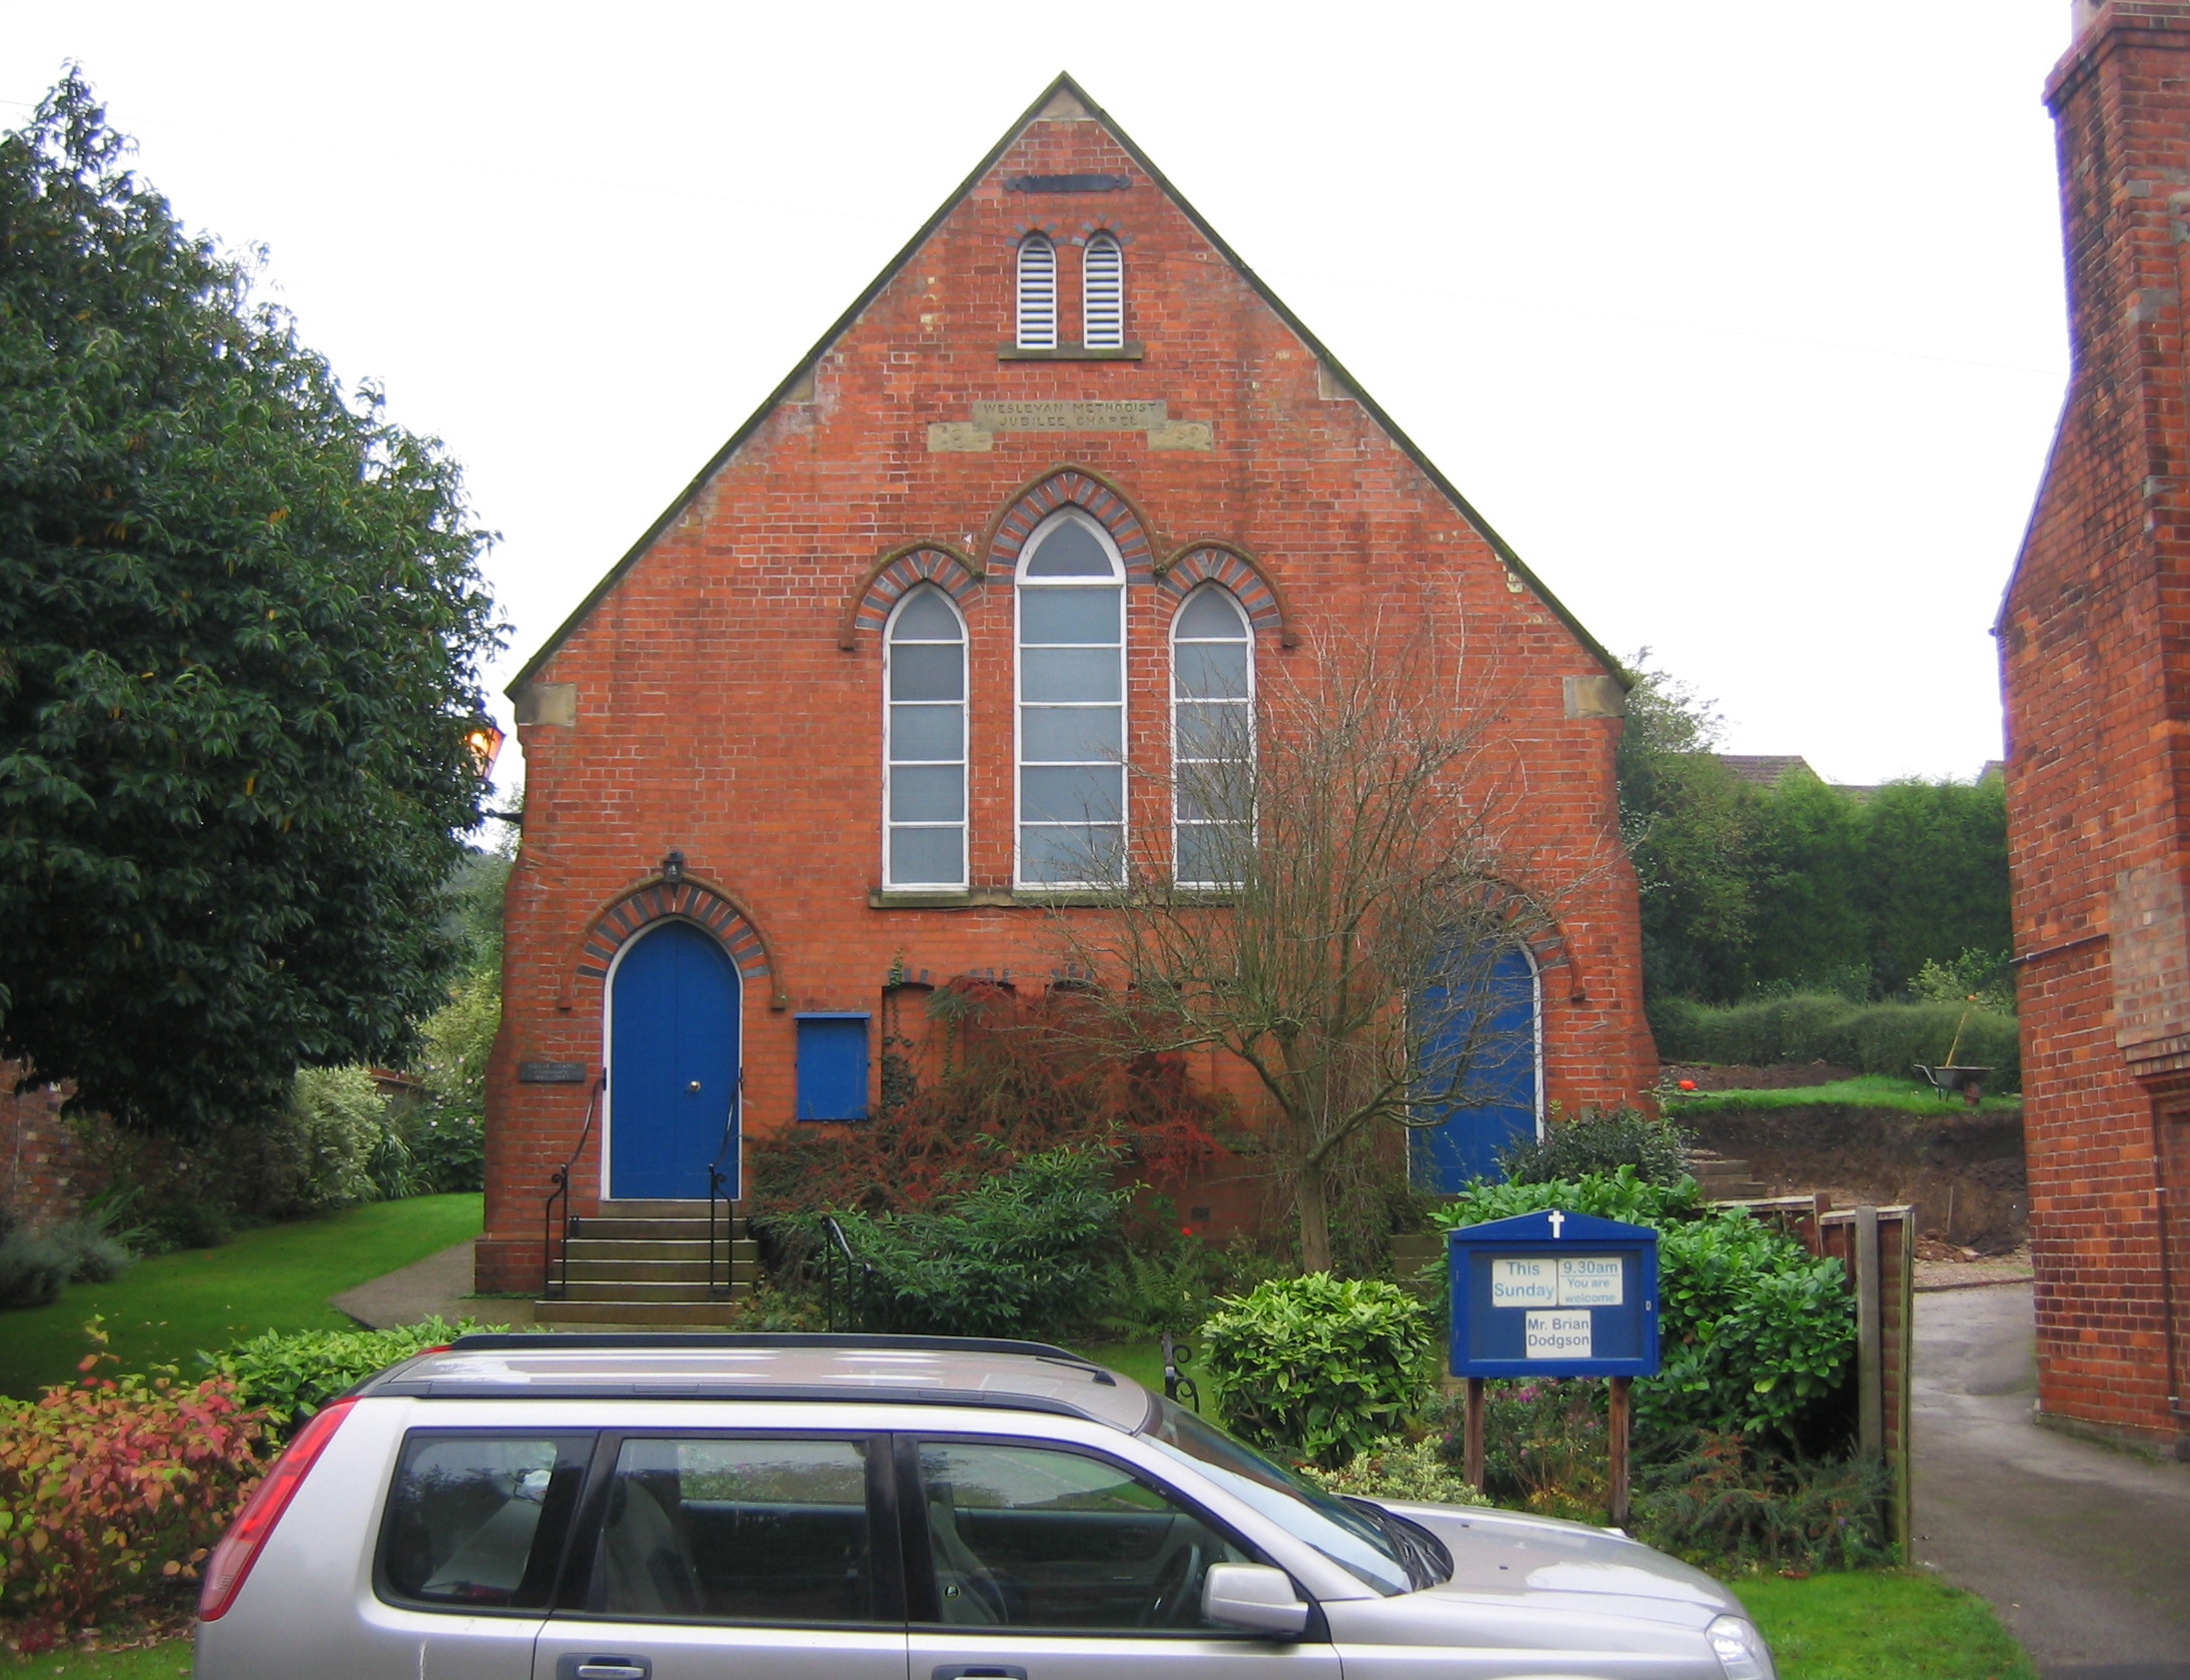 Previous Chapel Access